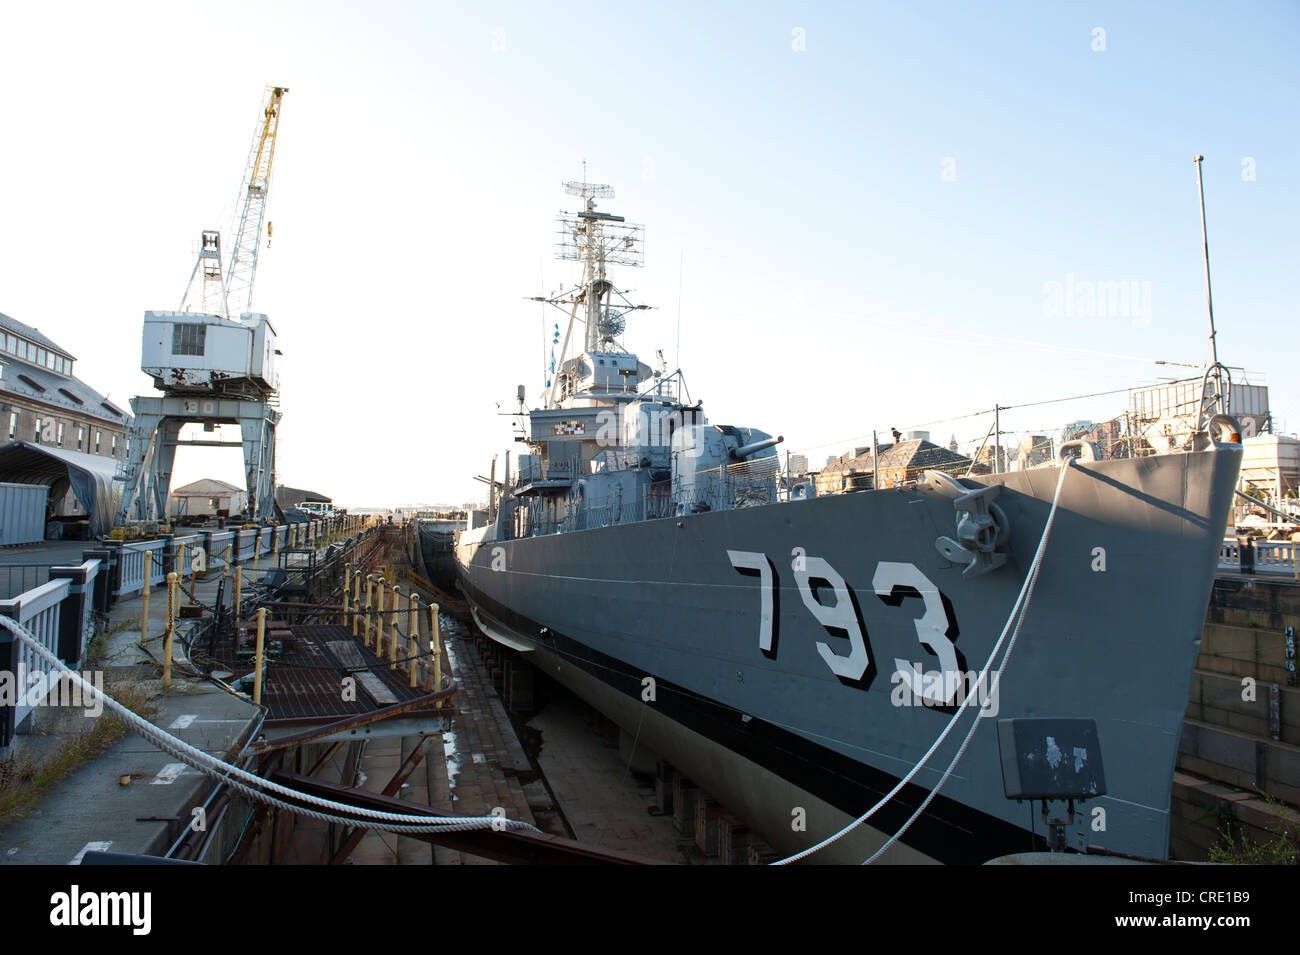 L'expédition dans le port, le musée de la marine, navire de guerre, le destroyer USS Cassin Young JJ-793 en cale sèche Banque D'Images